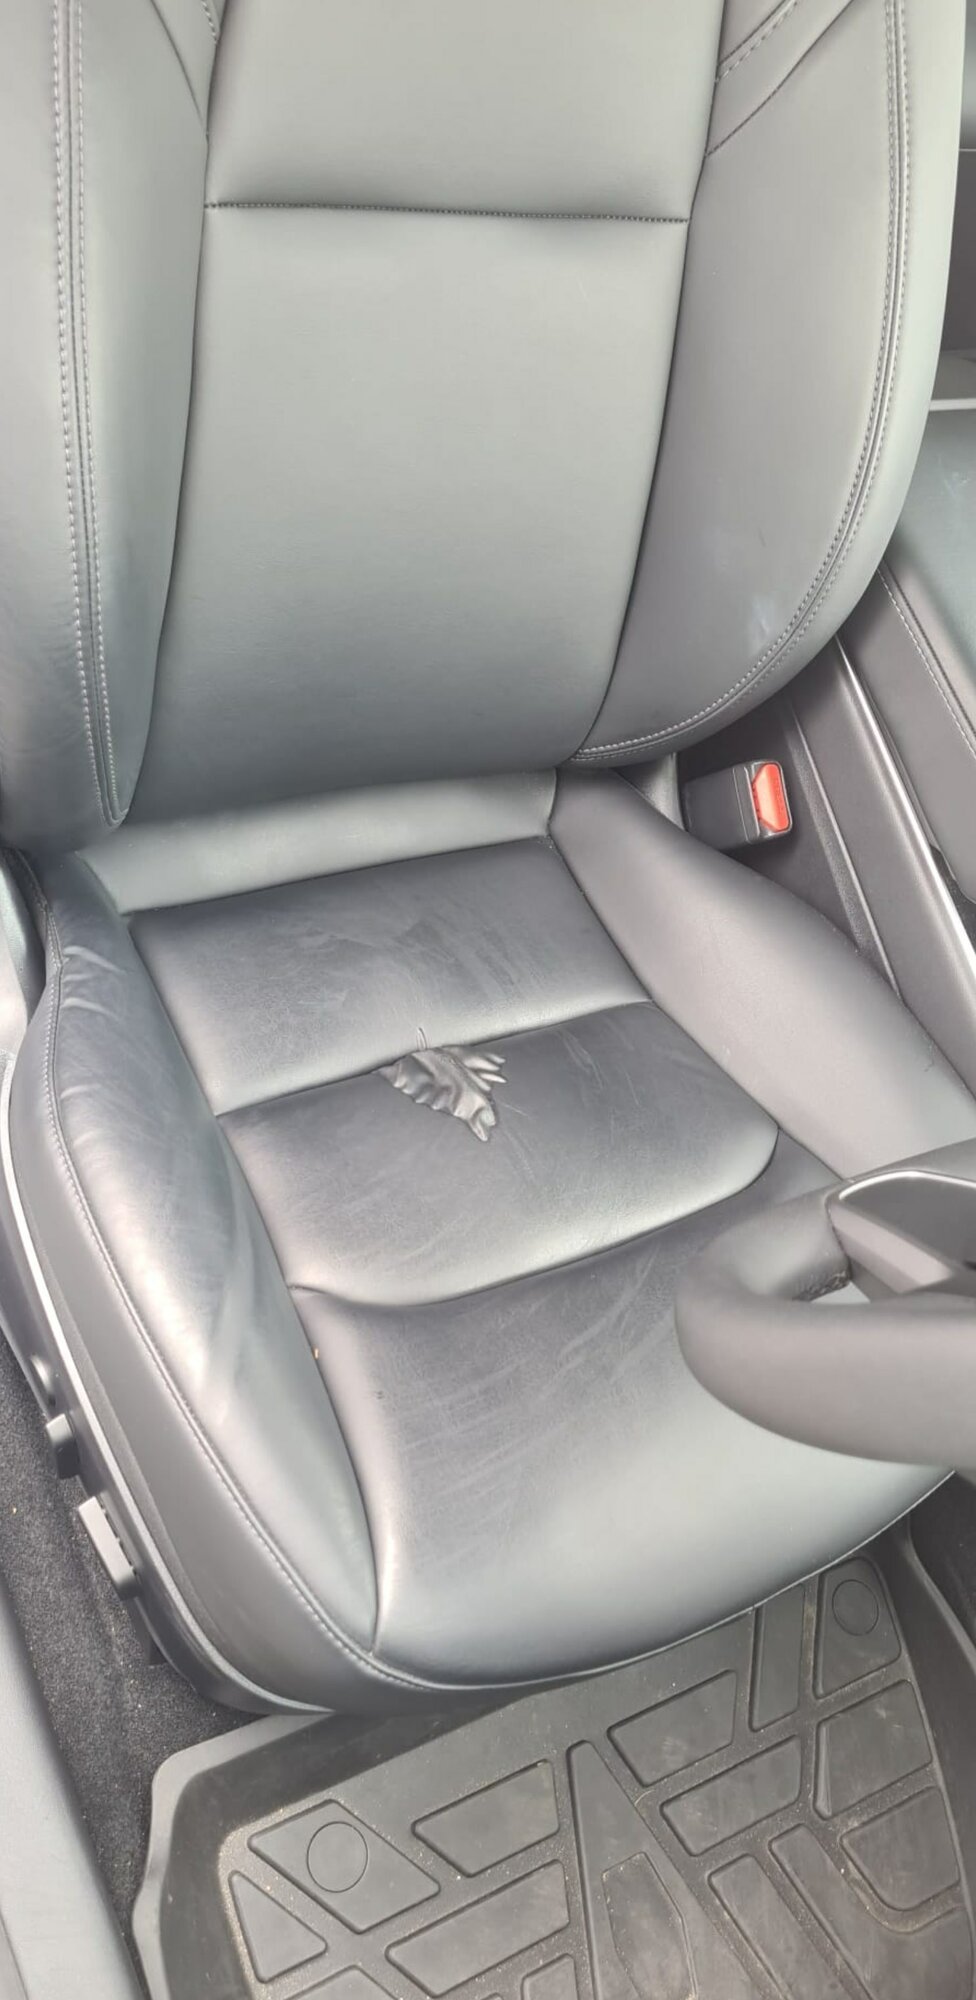 Tesla Car Seat1.jpg